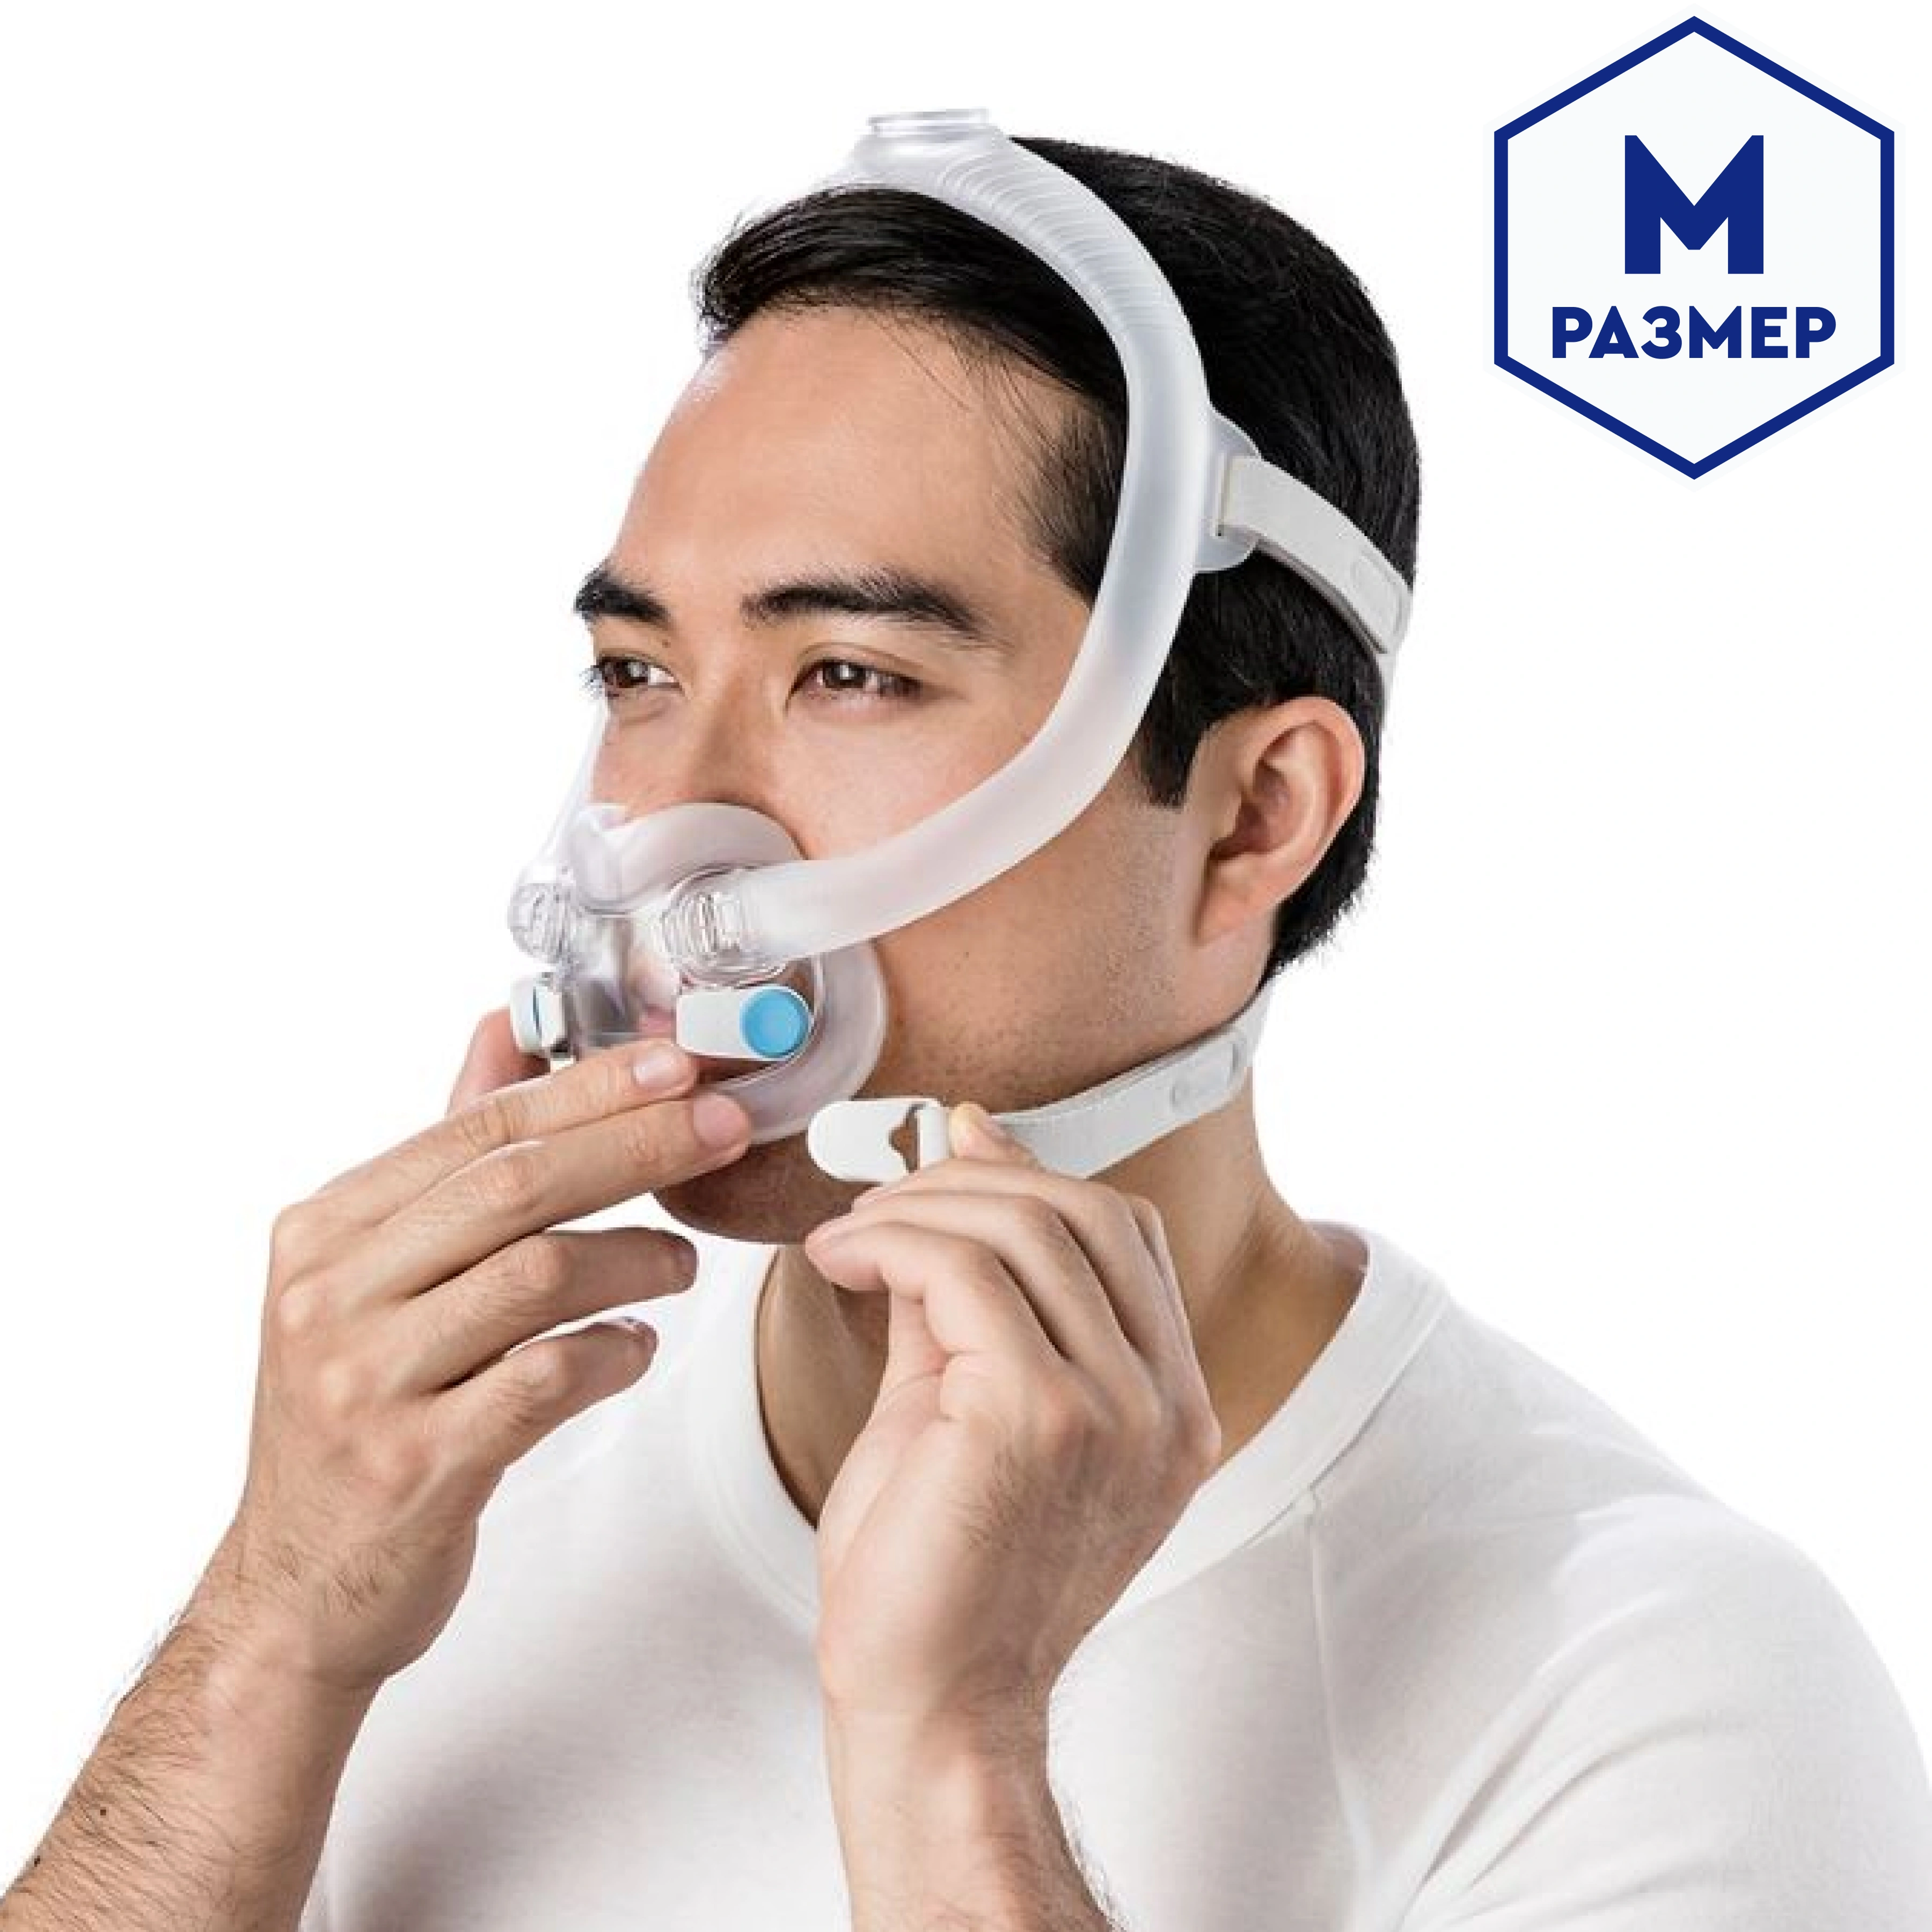 Маска ResMed дыхательная полнолицевая (AIRFIT F30i, M)  от интернет-магазина trimm.store